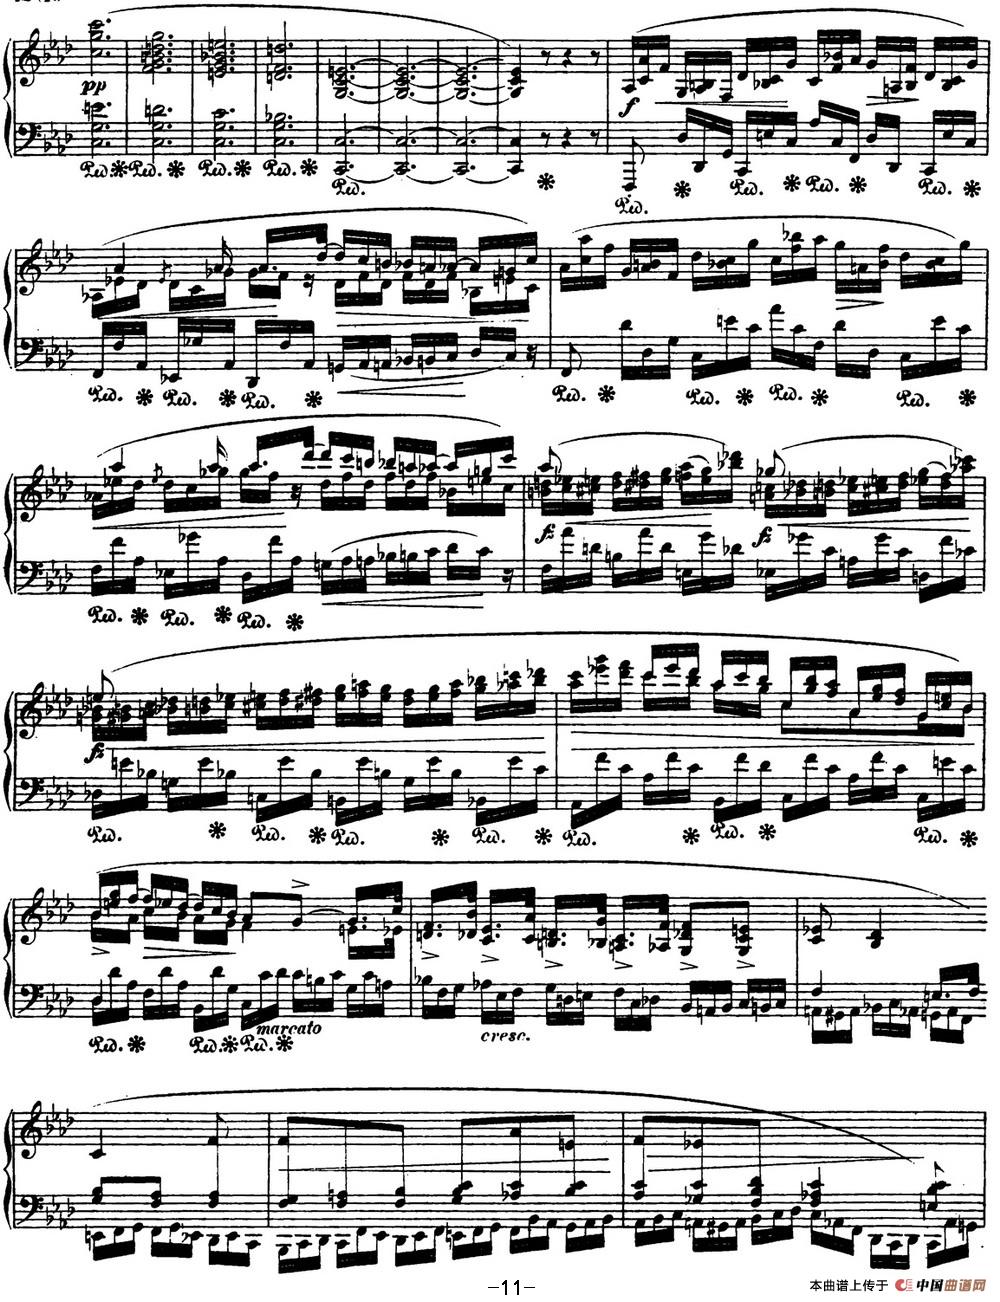 《肖邦 叙事曲4 f小调 Chopin Ballade No.4 Op.52》钢琴曲谱图分享